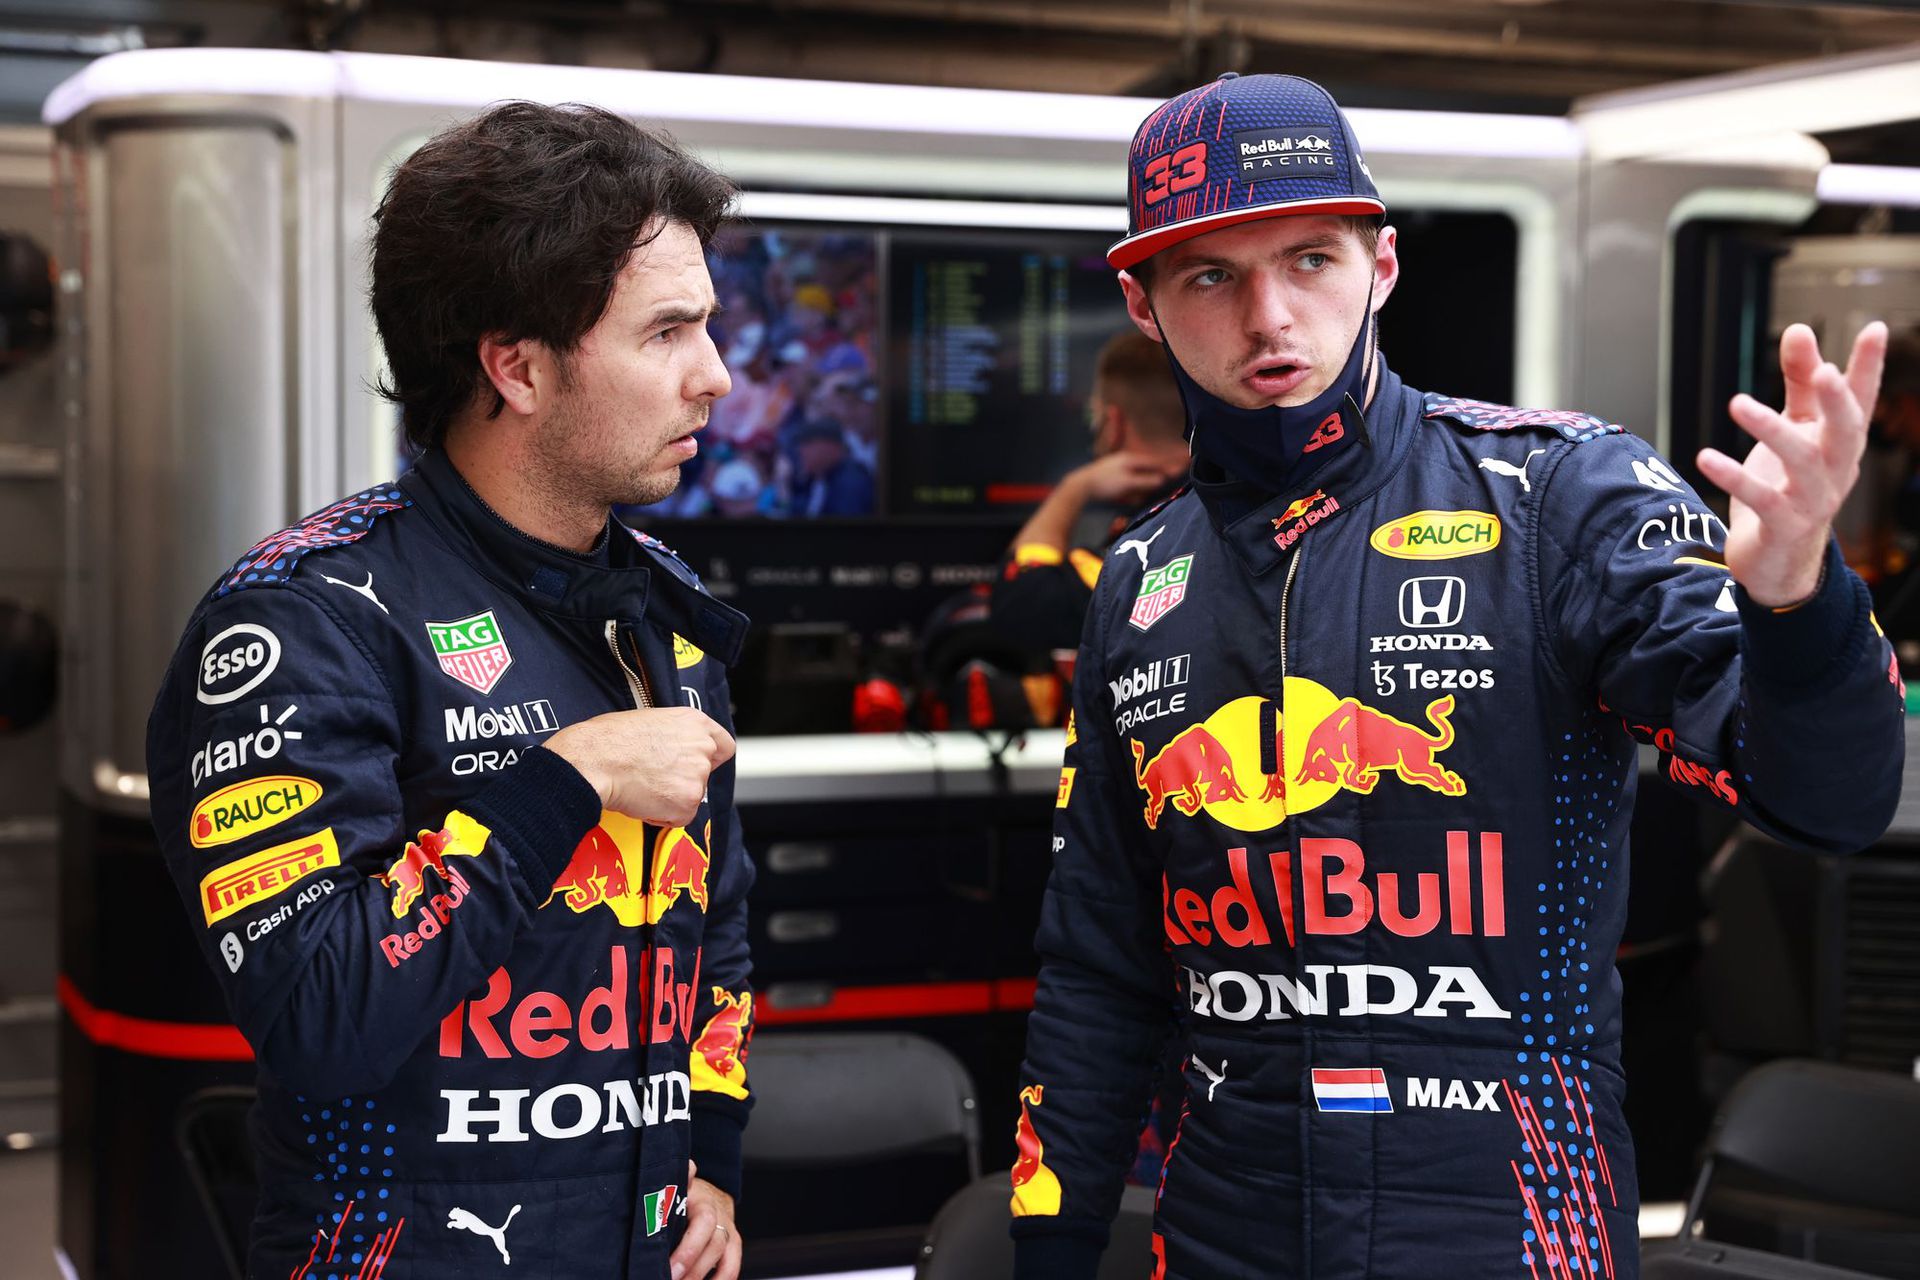 Mindkét Red Bull Racing pilóta pórul járt Mogyoródon: Sergio Pérez (balra) kiesett és tönkrement a motorja, míg Max Verstappen csak kilencedikként ért célba és elveszítette vezető helyét a világbajnoki pontversenyben / Fotó: GettyImages